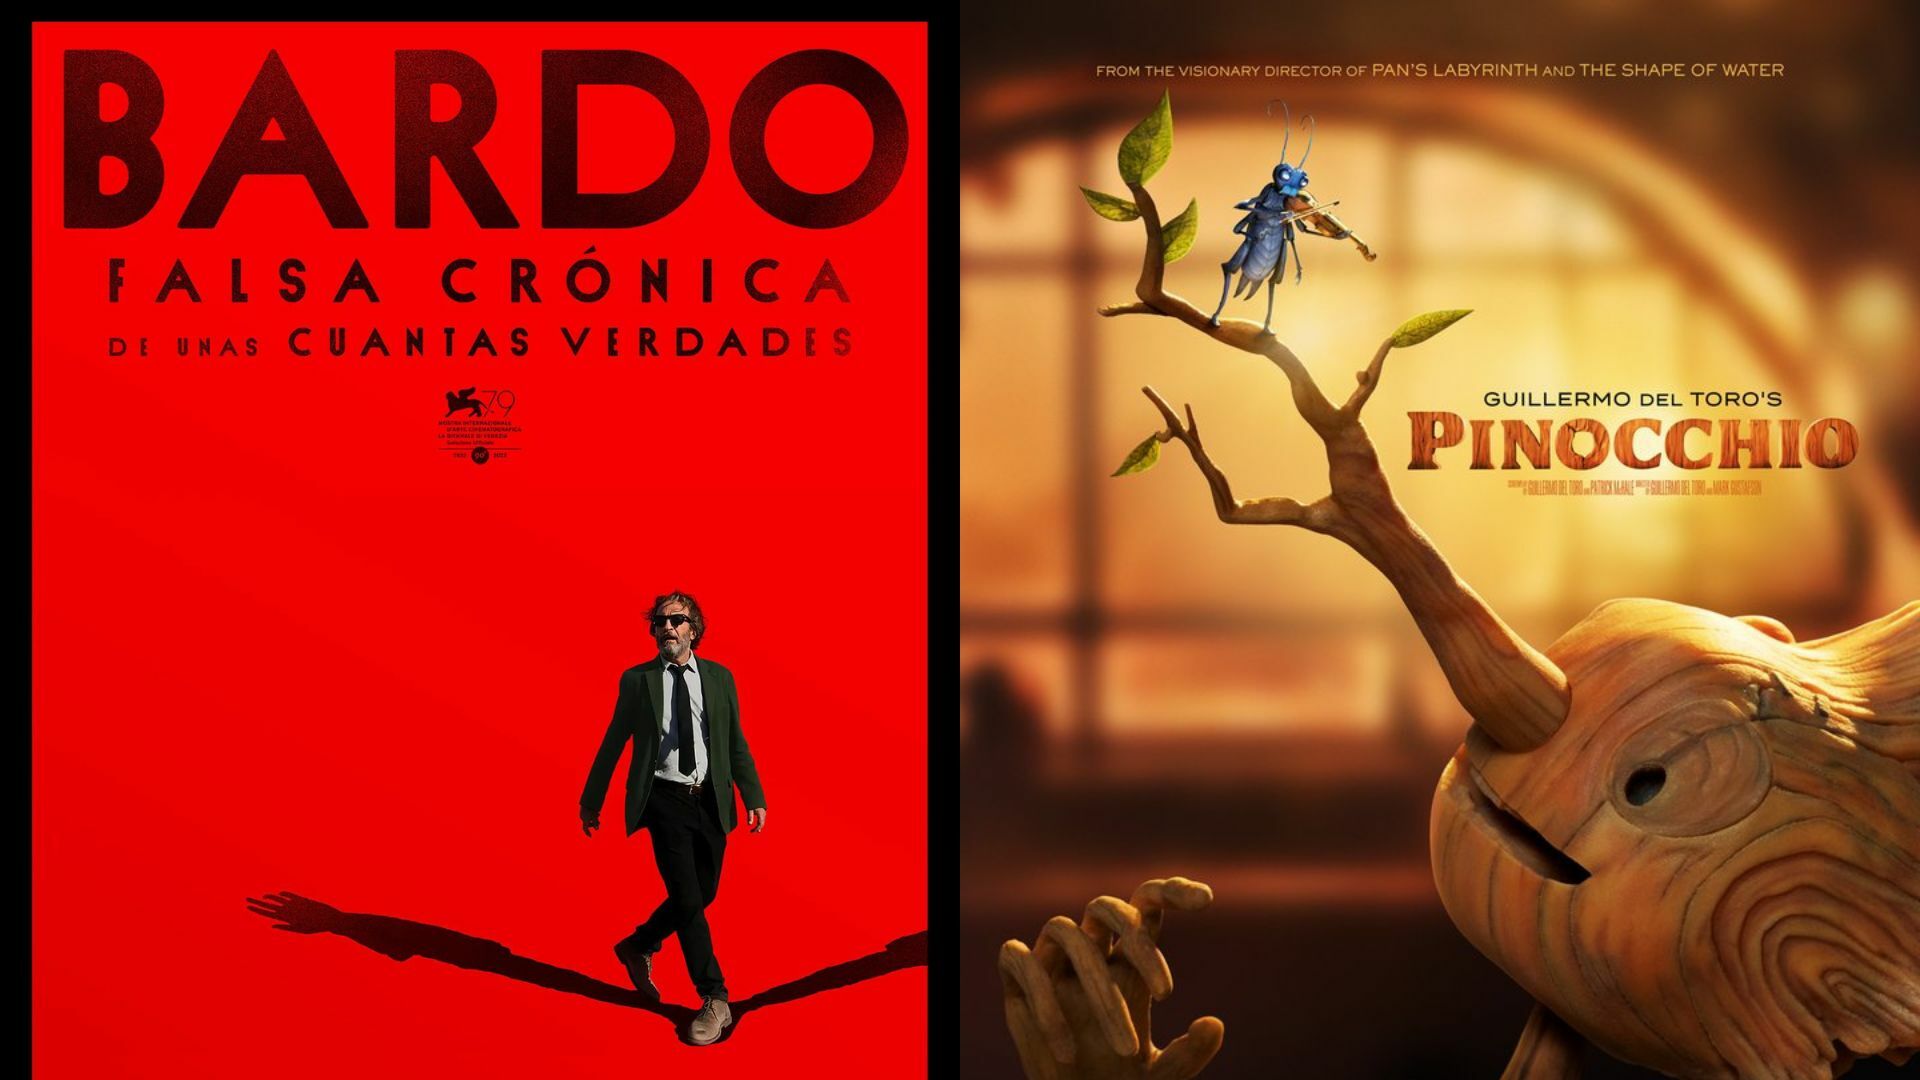 Bardo de Inárritu y Pinocchio de Guillermo del Toro dan primeros pasos